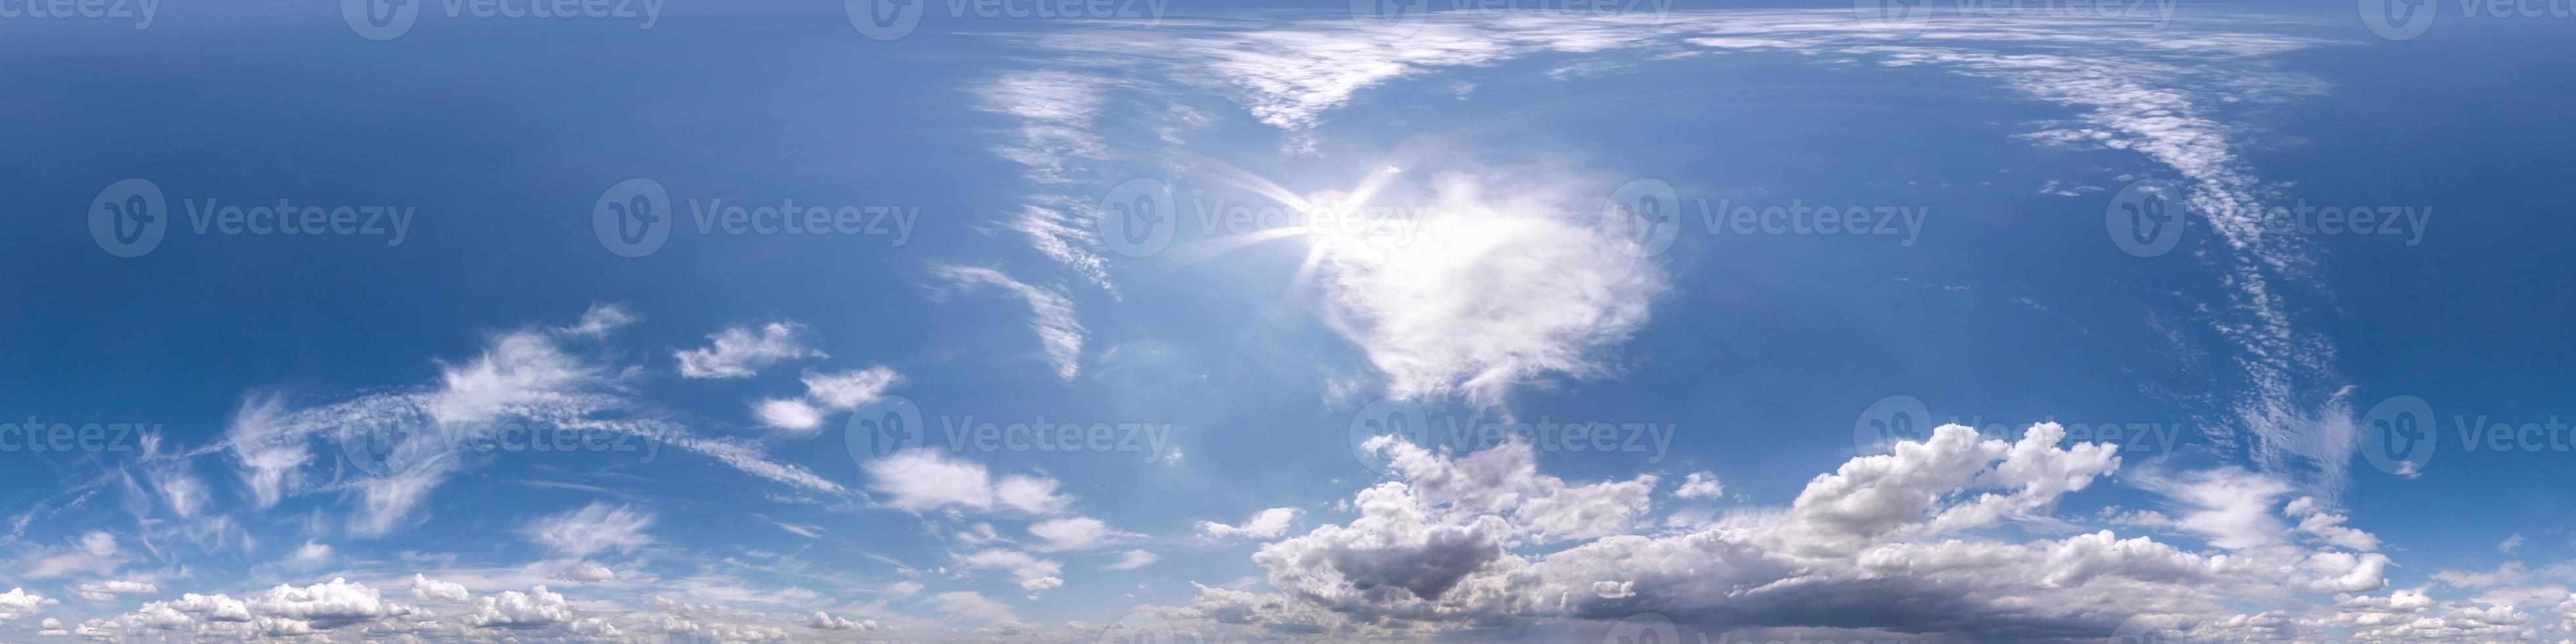 blå himmel med vackra fluffiga moln utan mark. sömlös hdri panorama 360 graders vinkelvy för användning i 3d-grafik eller spelutveckling som sky dome eller redigera drönarbild foto